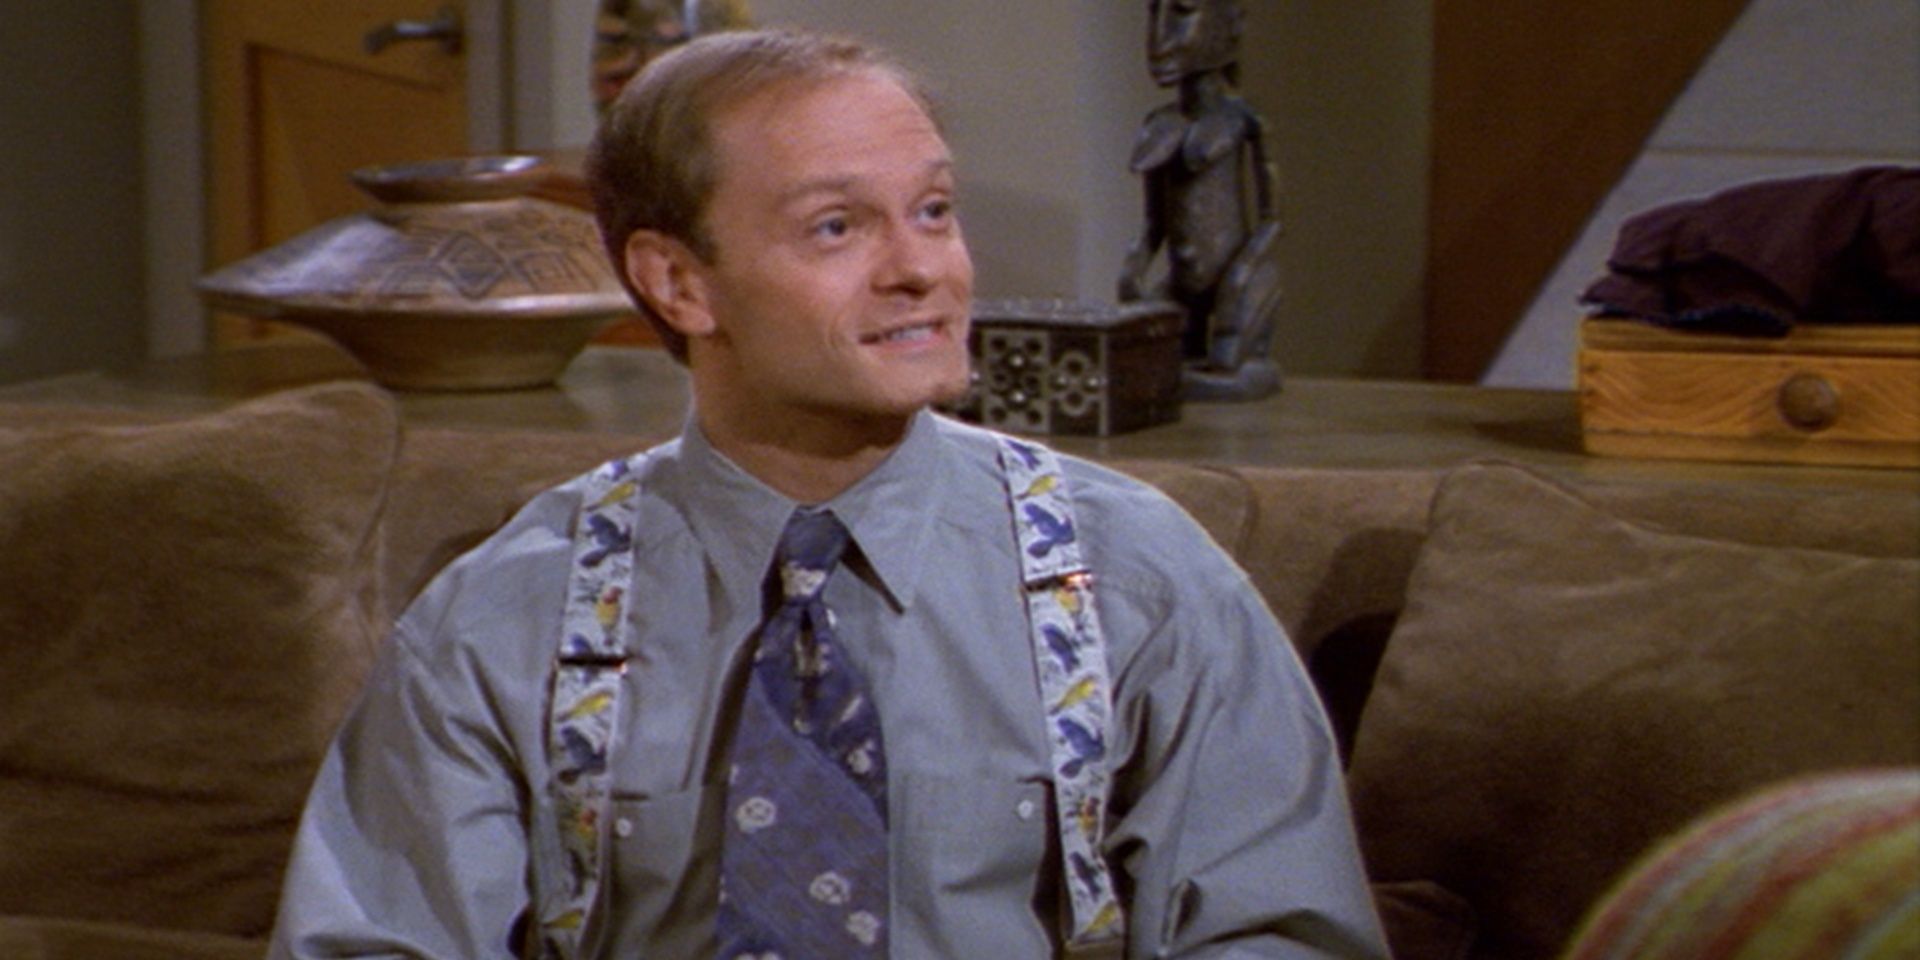 Niles Crane in "The Dinner Party" on Frasier